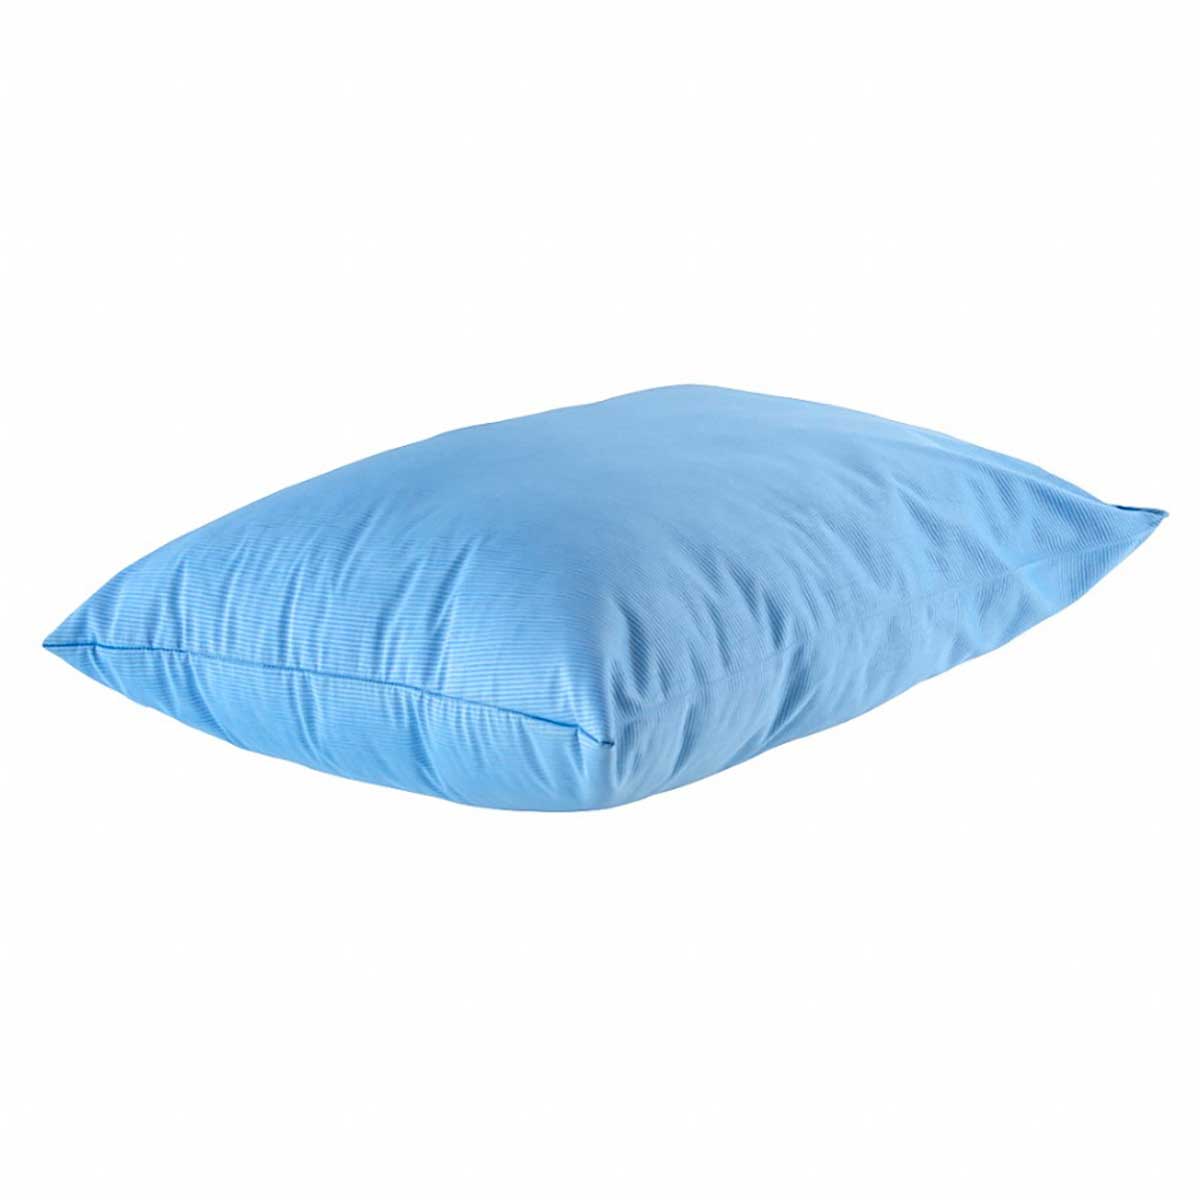 travesseiro-frio-em-fibra-de-poliester-siliconizada-50x70cm-fibrasca-frostygel-4345-azul-1-peca-3.jpg